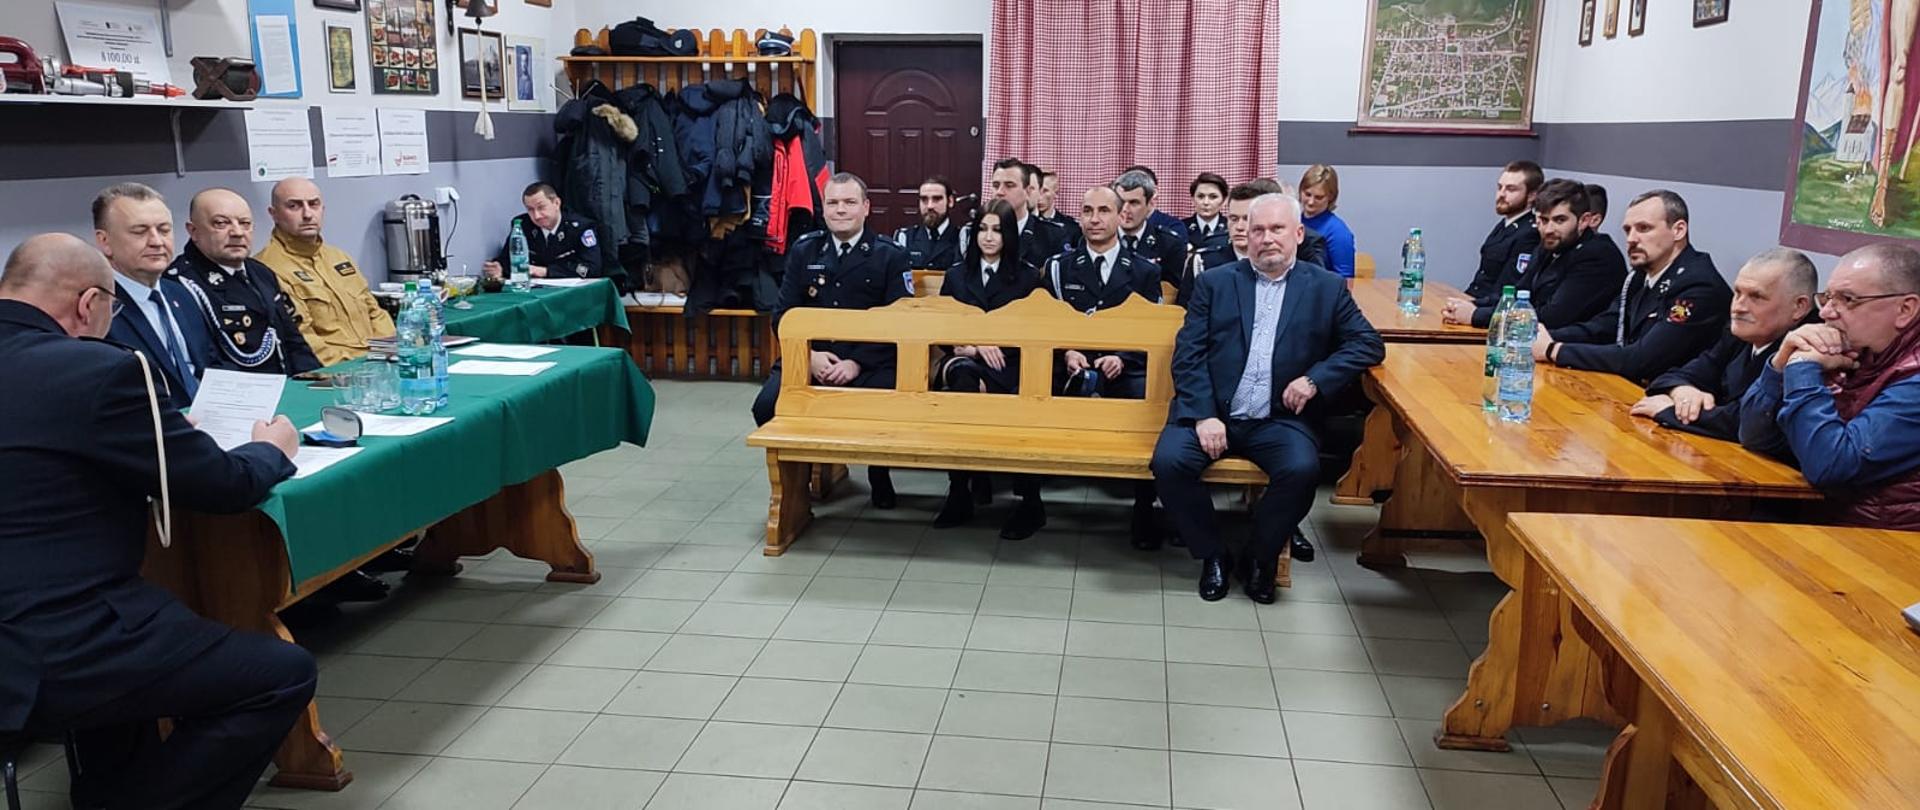 Zdjęcie przedstawia gości i organizatorów spotkania noworocznego Ochotniczej Straży Pożarnej w Chęcinach.